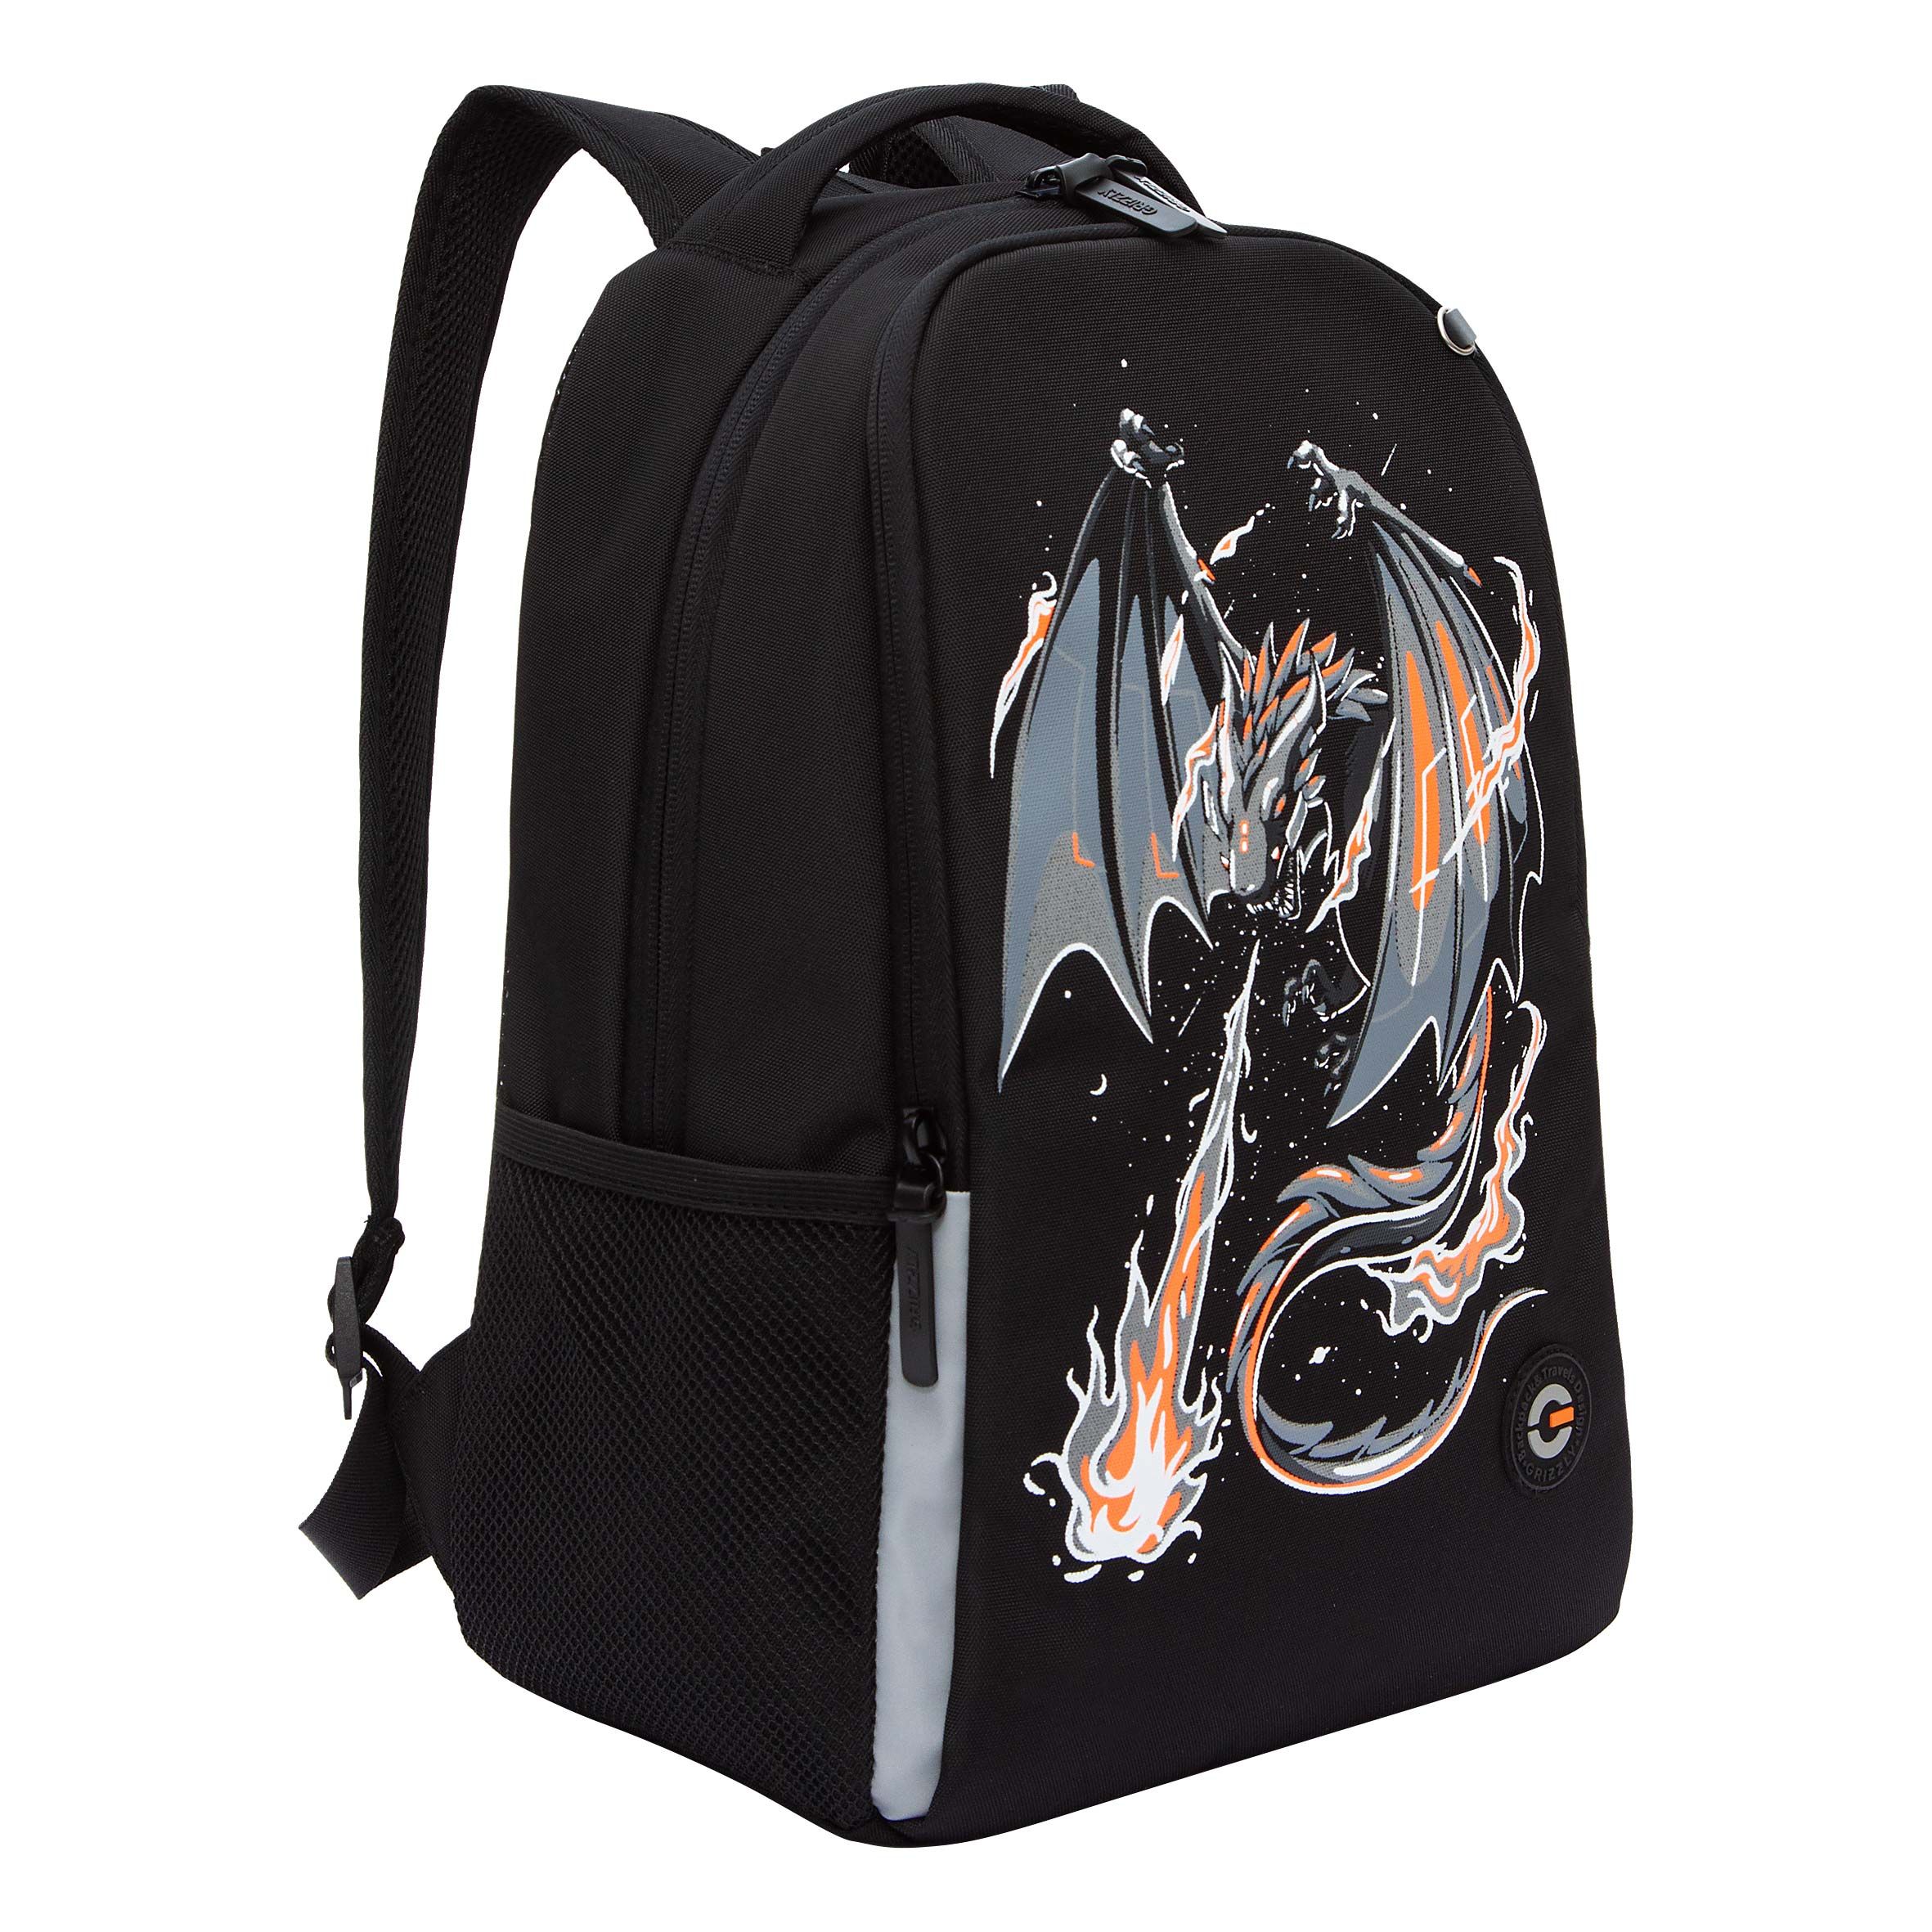 Рюкзак школьный GRIZZLY RB-351-8 легкий с двумя отделениями для мальчика черный школьный анатомический рюкзак grizzly ru 437 4 4 оранжевый